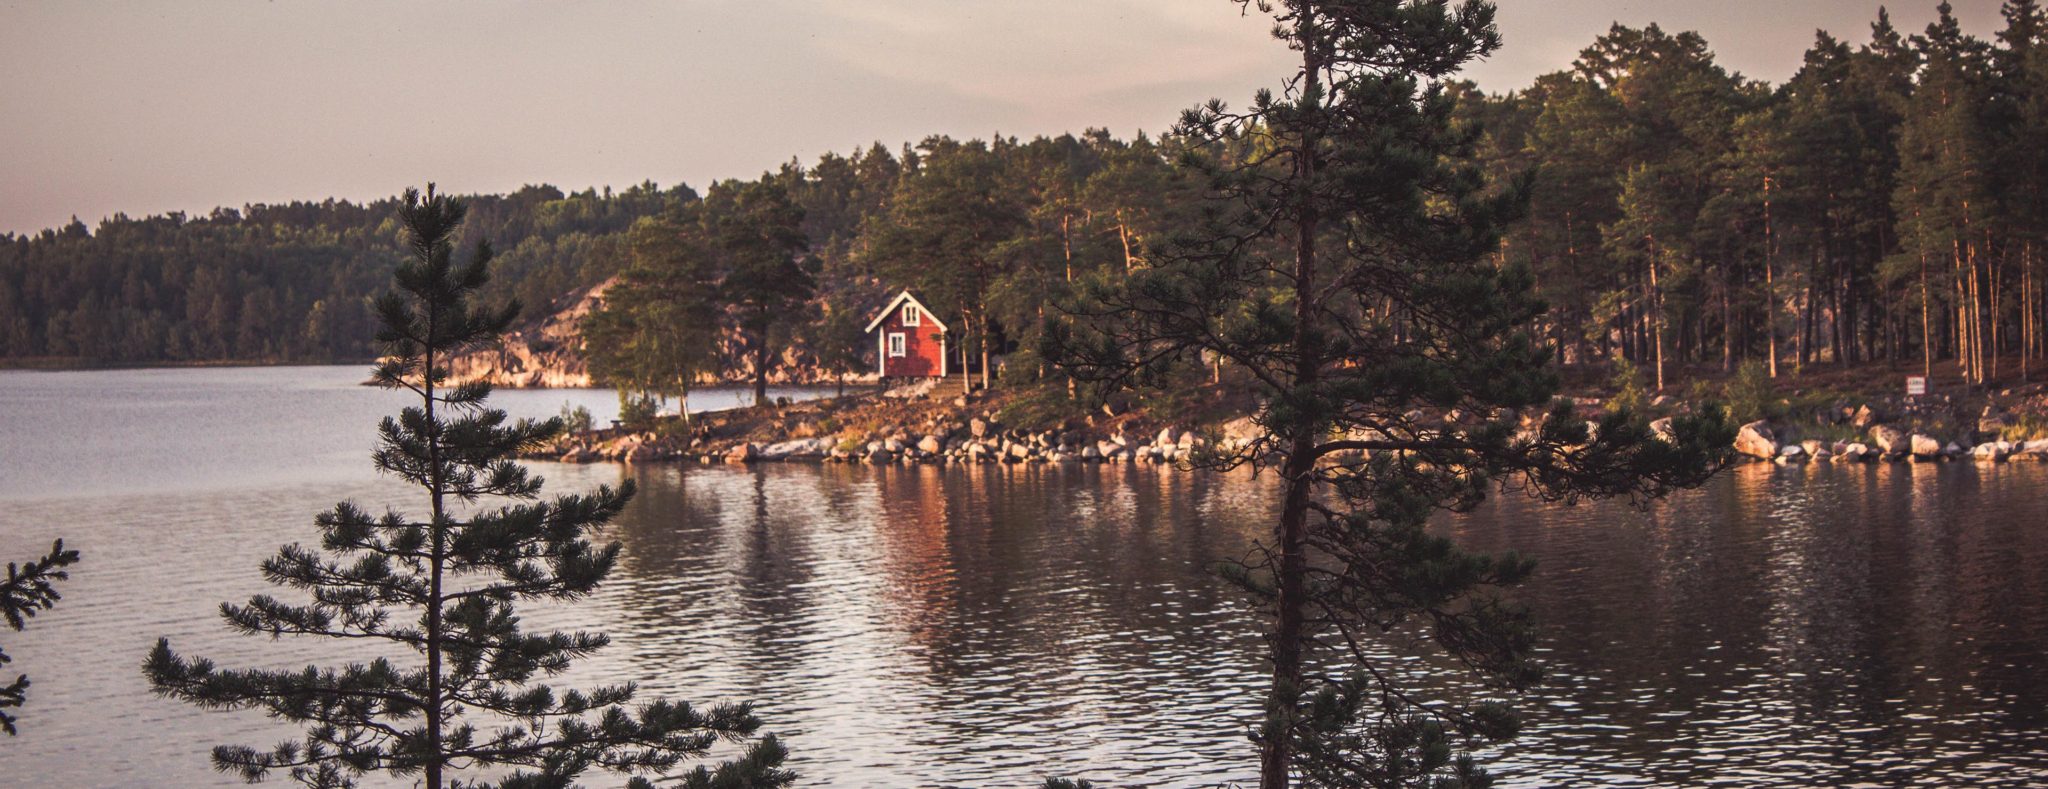 Zweeds huisje aan het water